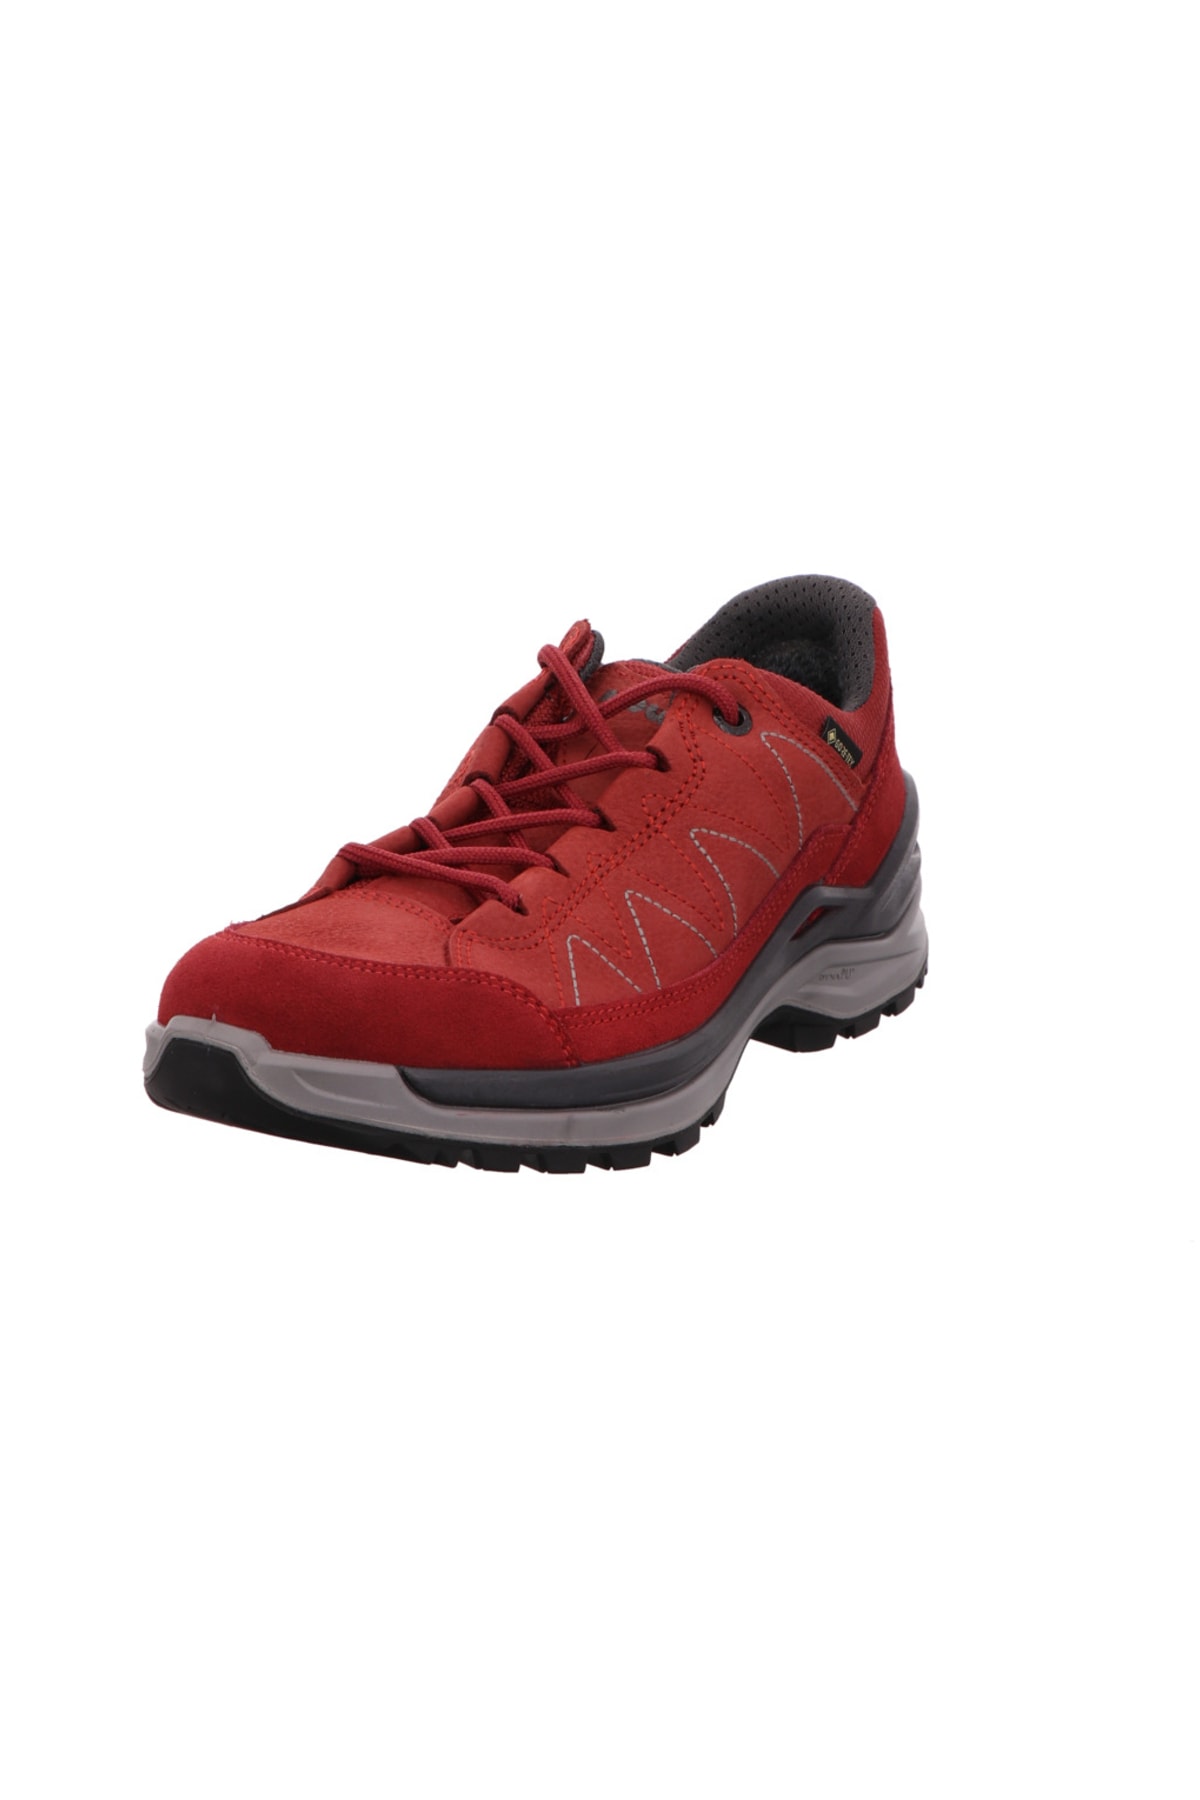 Lowa Outdoor-Schuhe Rot Flacher Absatz Fast ausverkauft